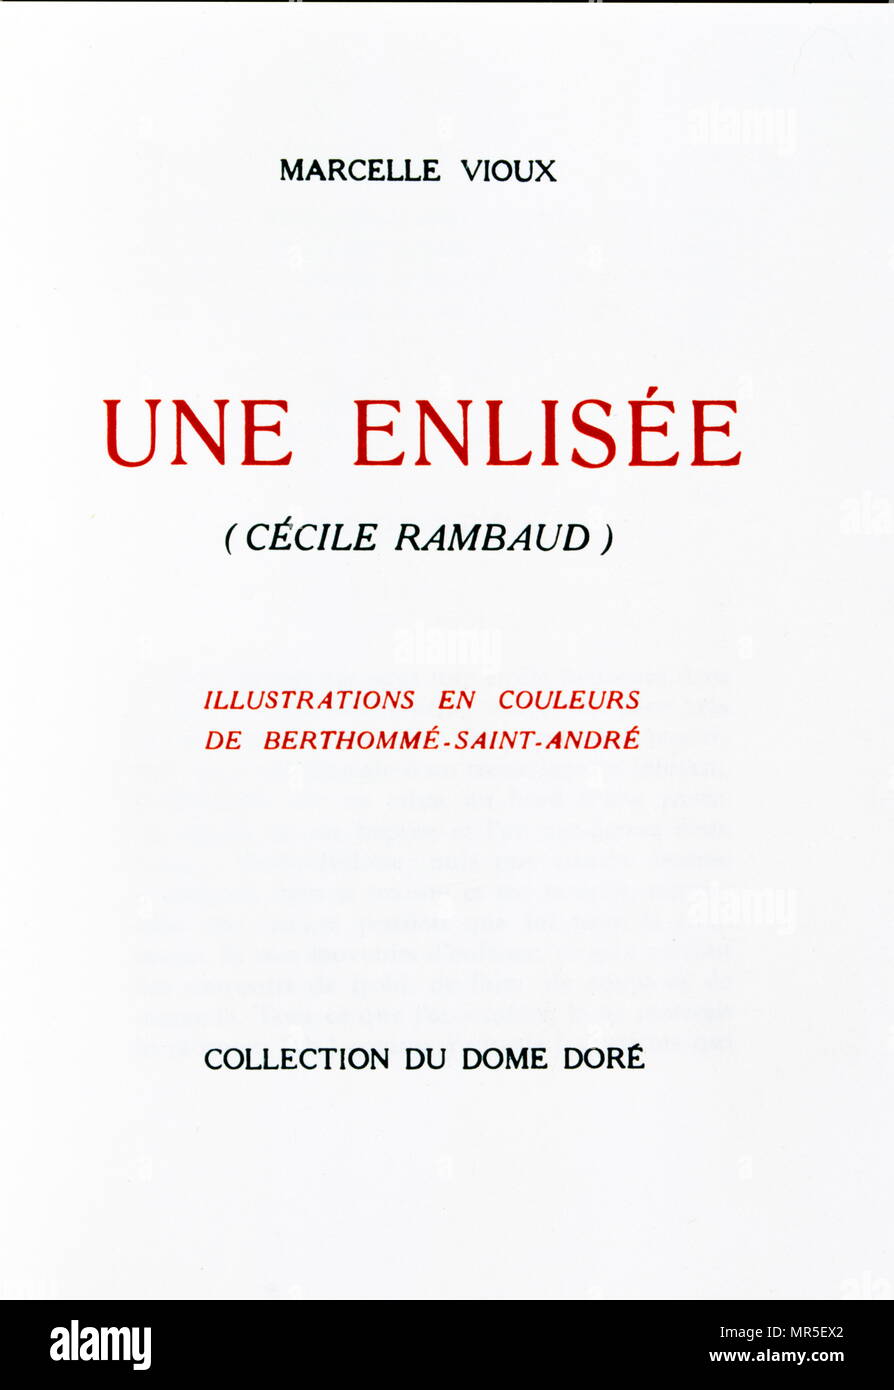 Clio (1900); Titelseite des Buches der französische Schriftsteller Anatole France. Anatole France (1844 - 1924), war ein französischer Dichter, Journalist und Schriftsteller. Stockfoto